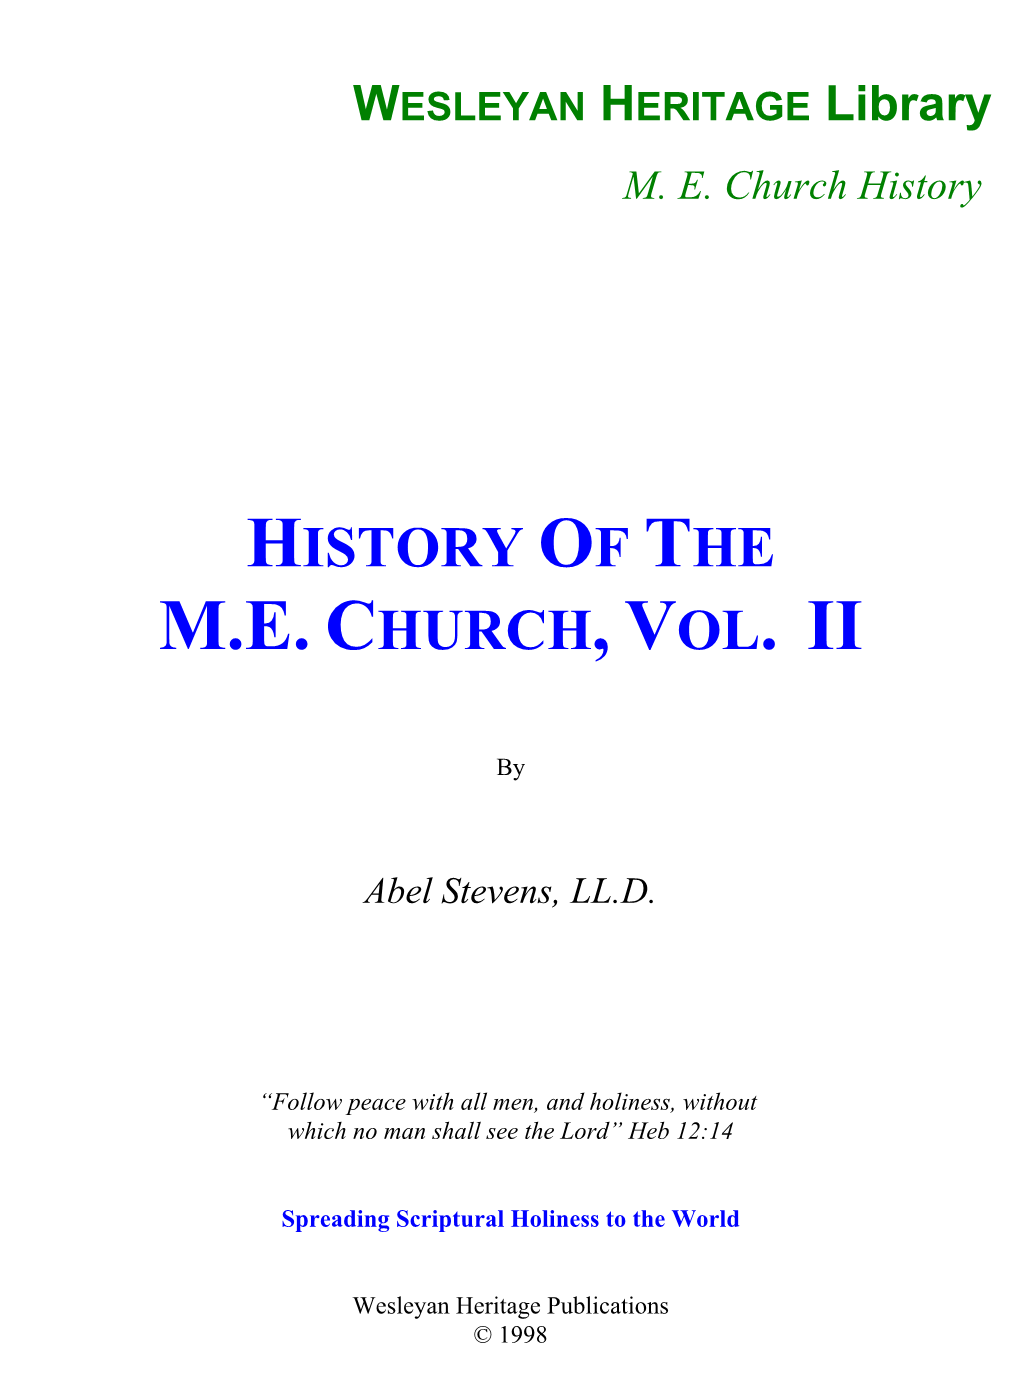 History of the M.E. Church, Vol. Ii